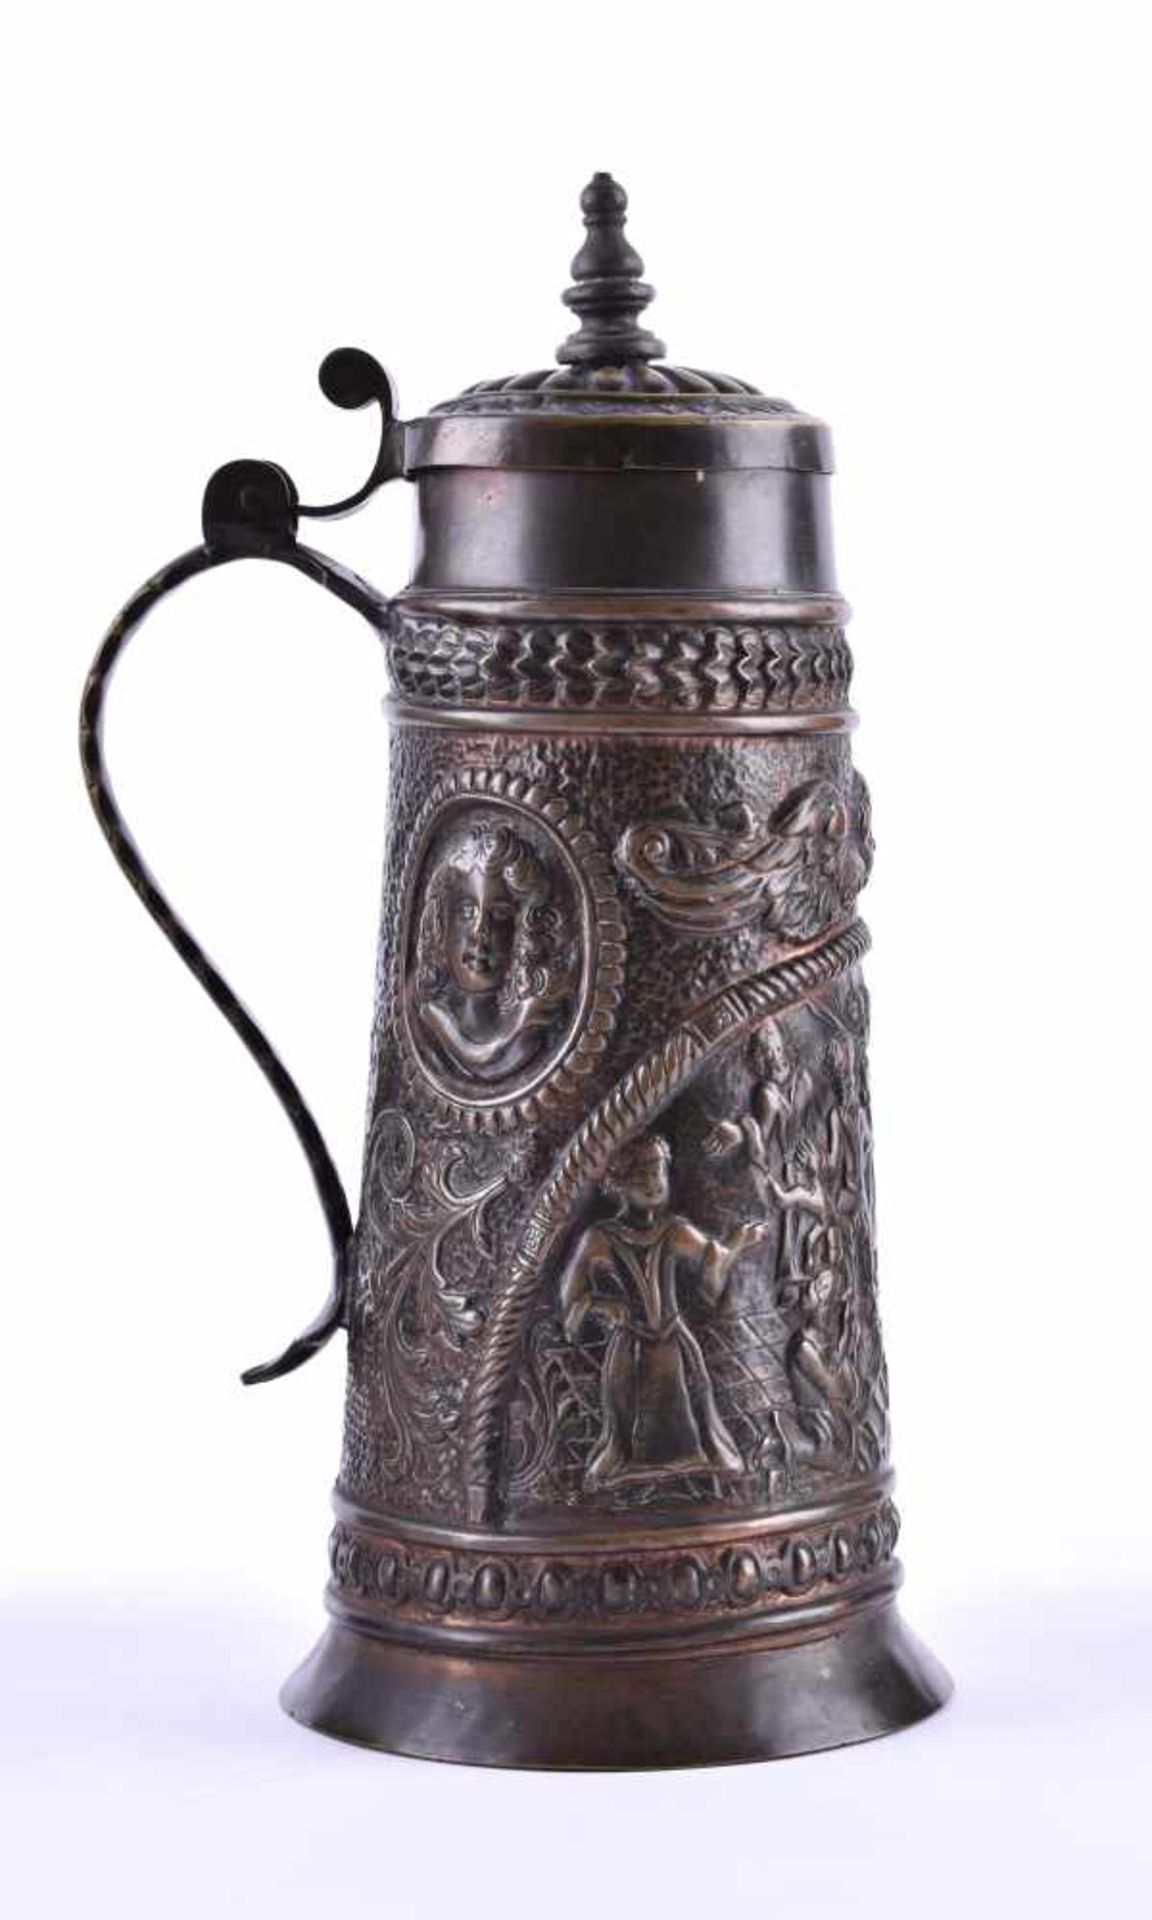 Barock-Henkelkrug um 1740Bronze, H: 29,5 cmBaroque handle jug around 1740bronze, height: 29.5 cm - Bild 3 aus 5